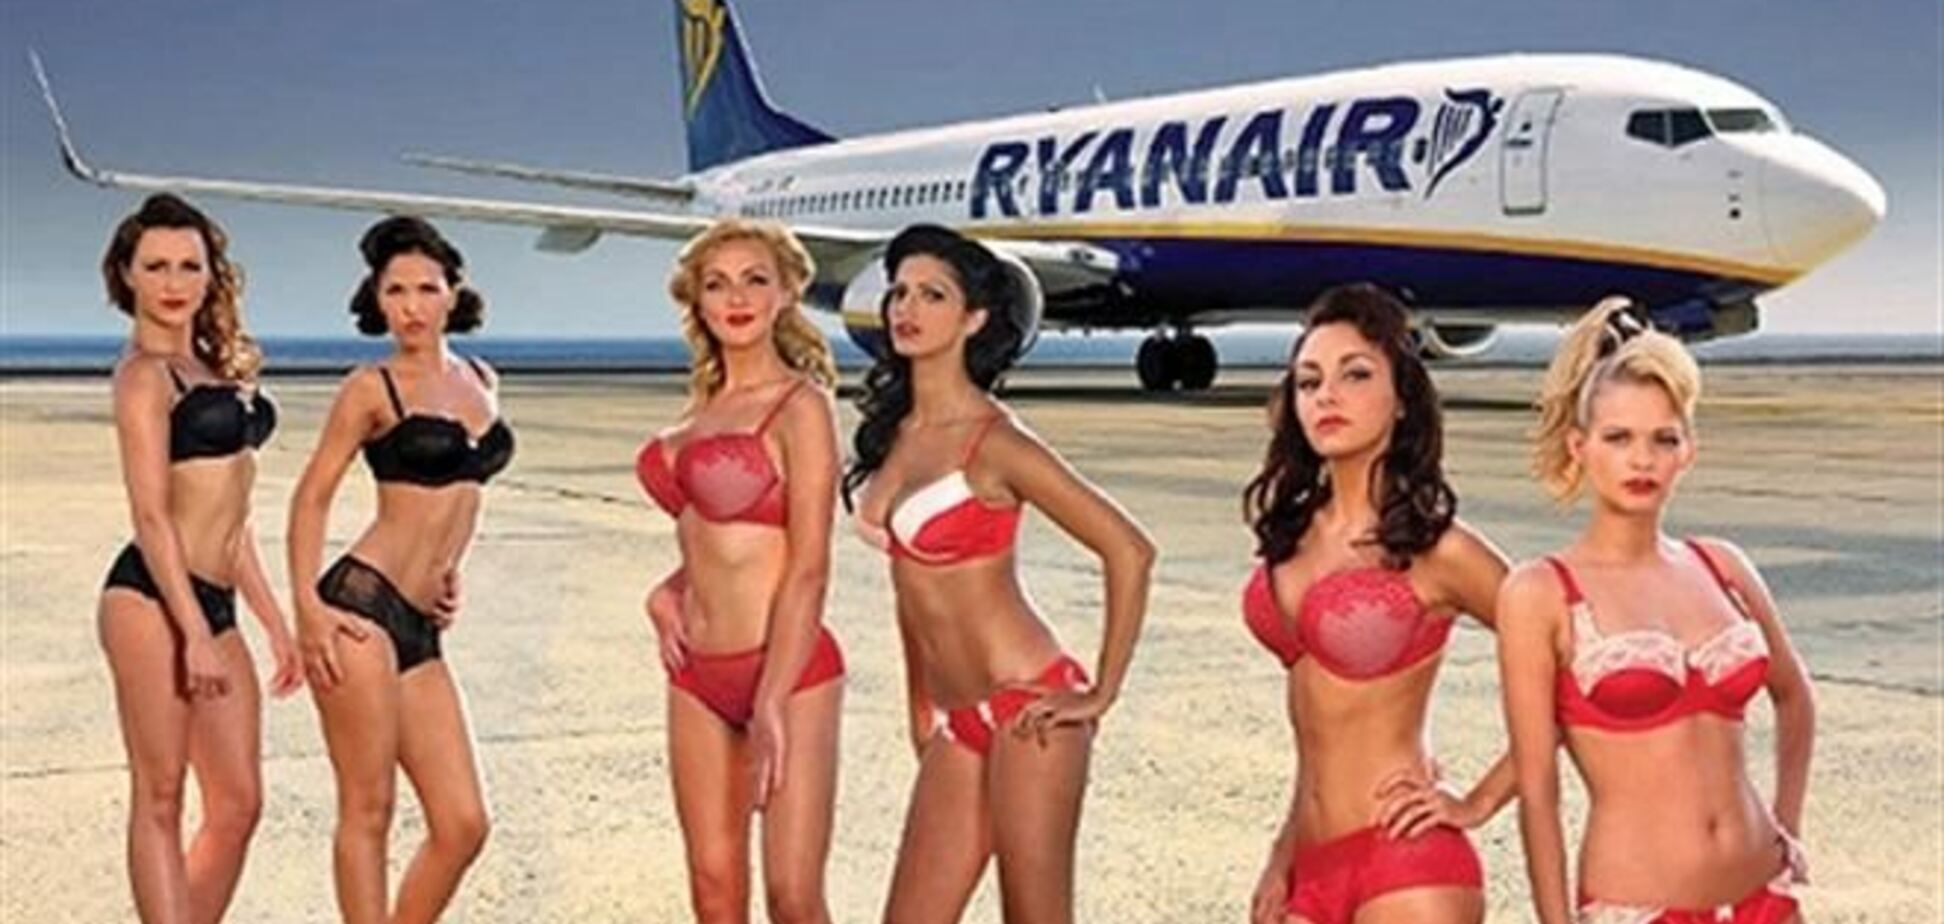 Эротический календарь Ryanair запрещен судом